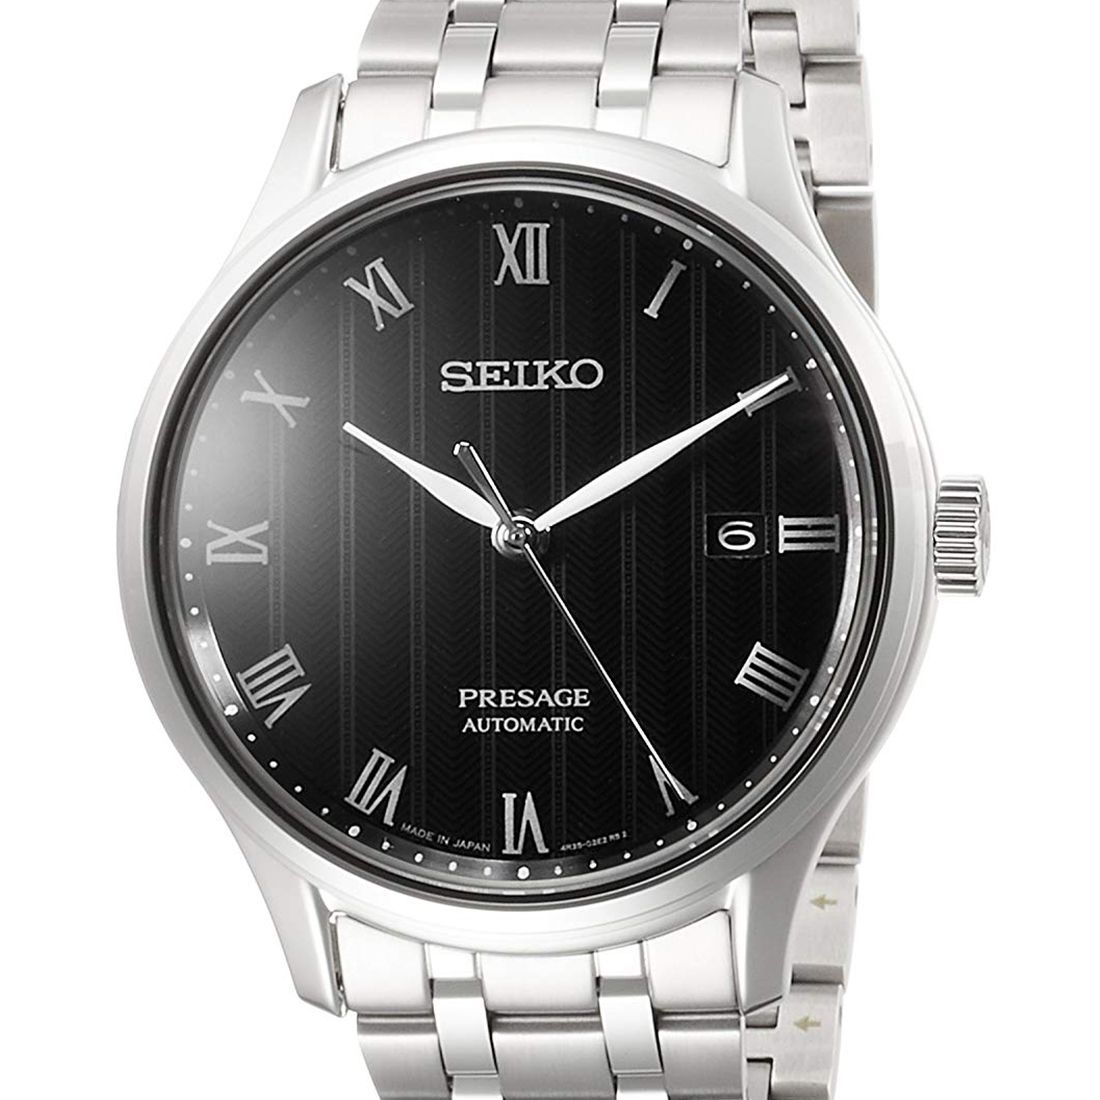 Seiko Presage Automatic 23 Jewels JDM Watch SARY099 -Seiko